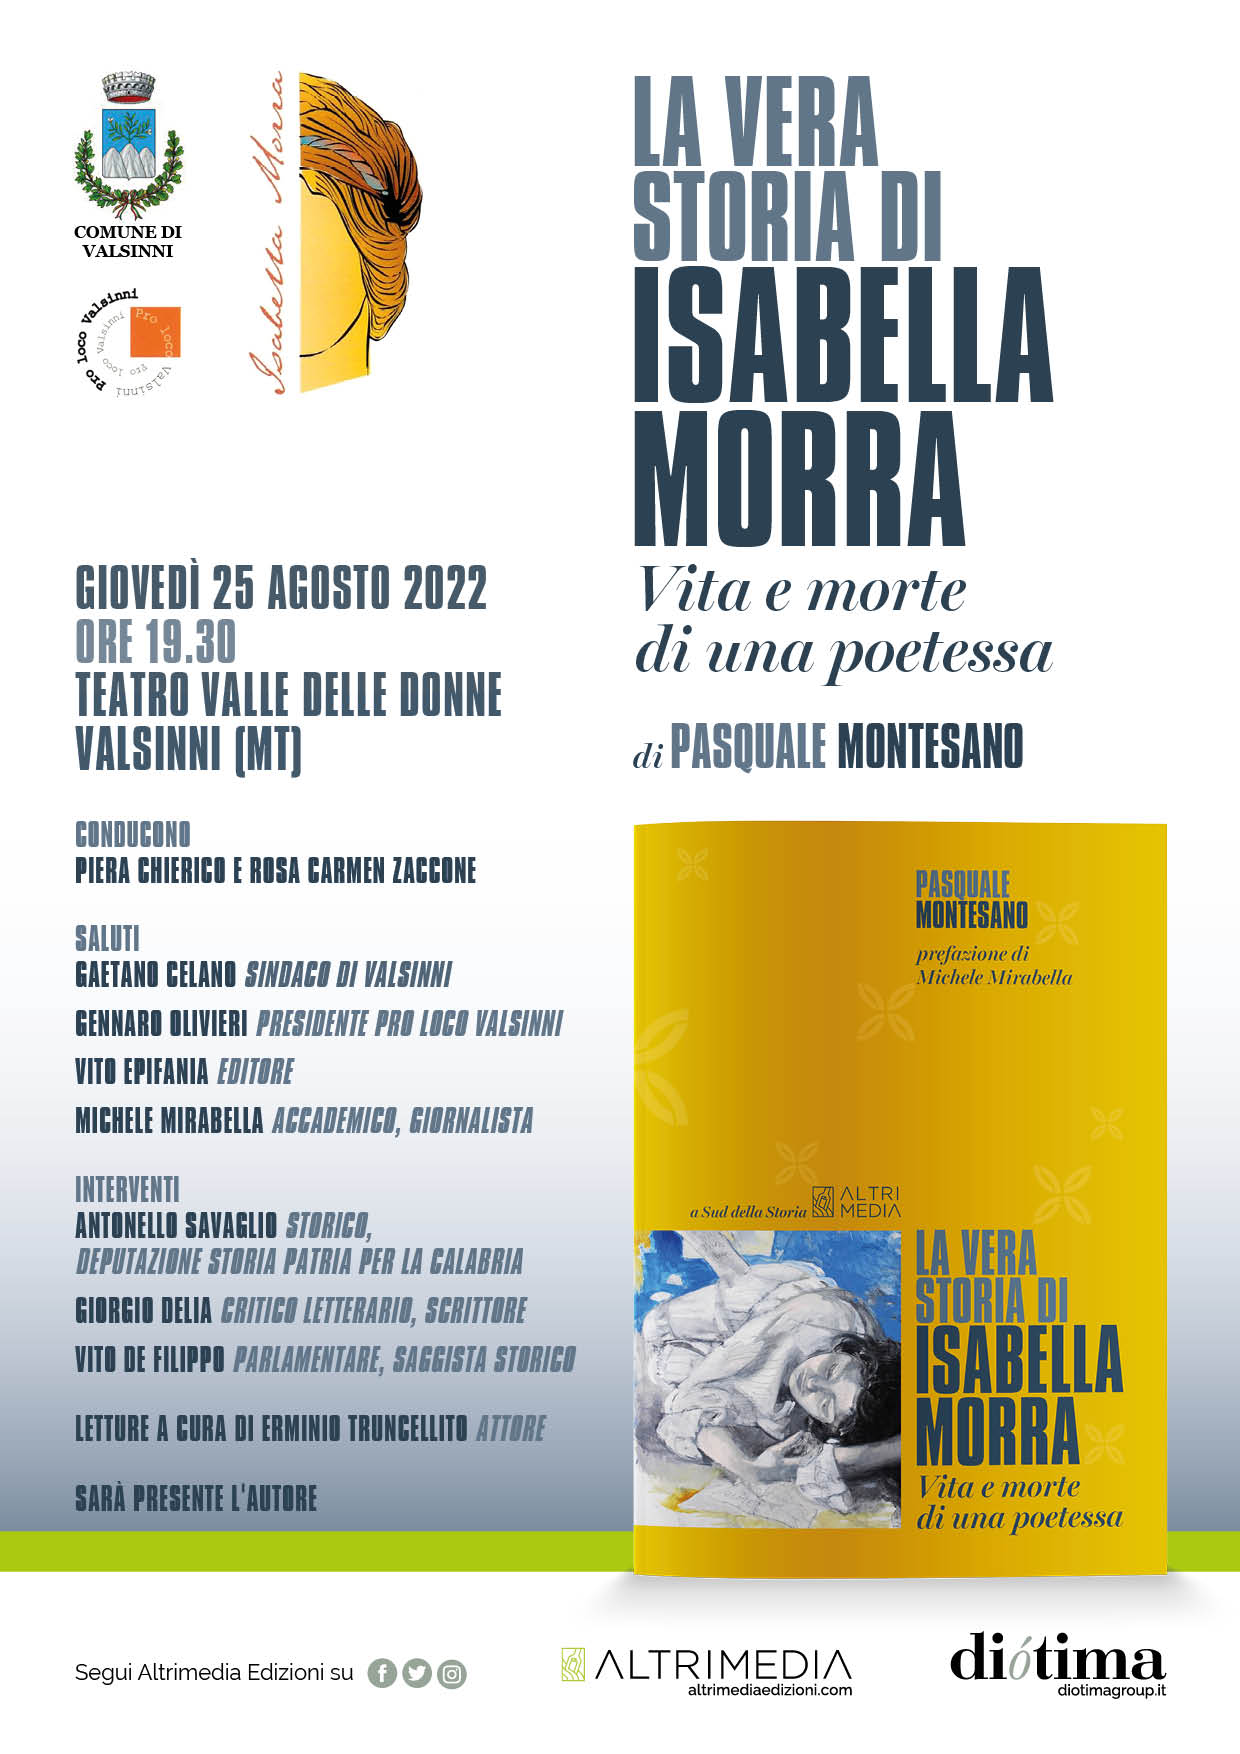 Valsinni, il 25 Pasquale Montesano presenta “La vera storia di Isabella Morra. Vita e morte di una poetessa”